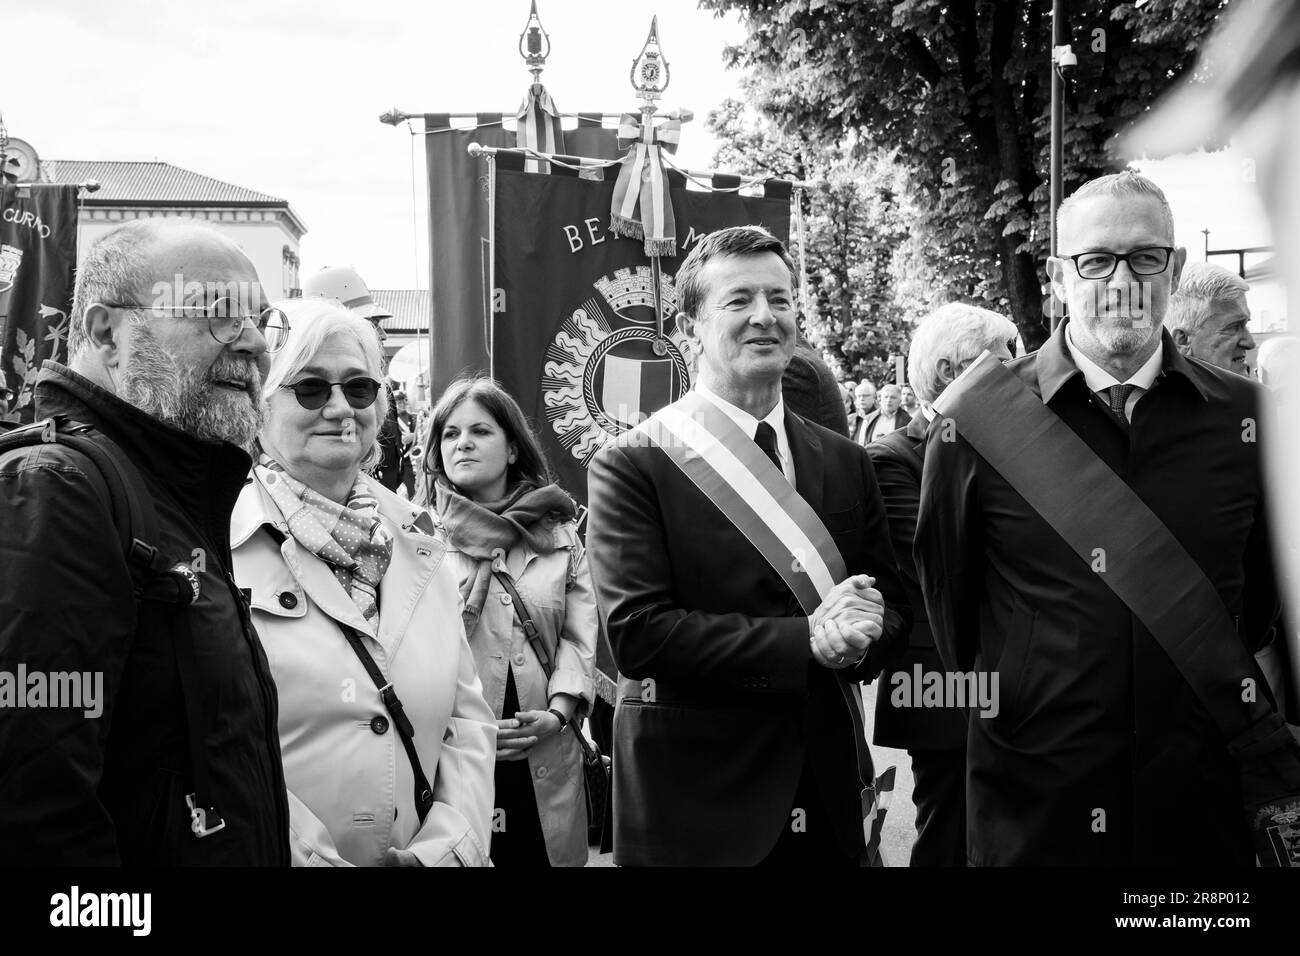 Italienische Politikerin Rosy Bindi, Bürgermeister Giorgio Gori und lokale Behörden am 25. April (Jahrestag der Befreiung Italiens). Bergamo, Italien. Stockfoto